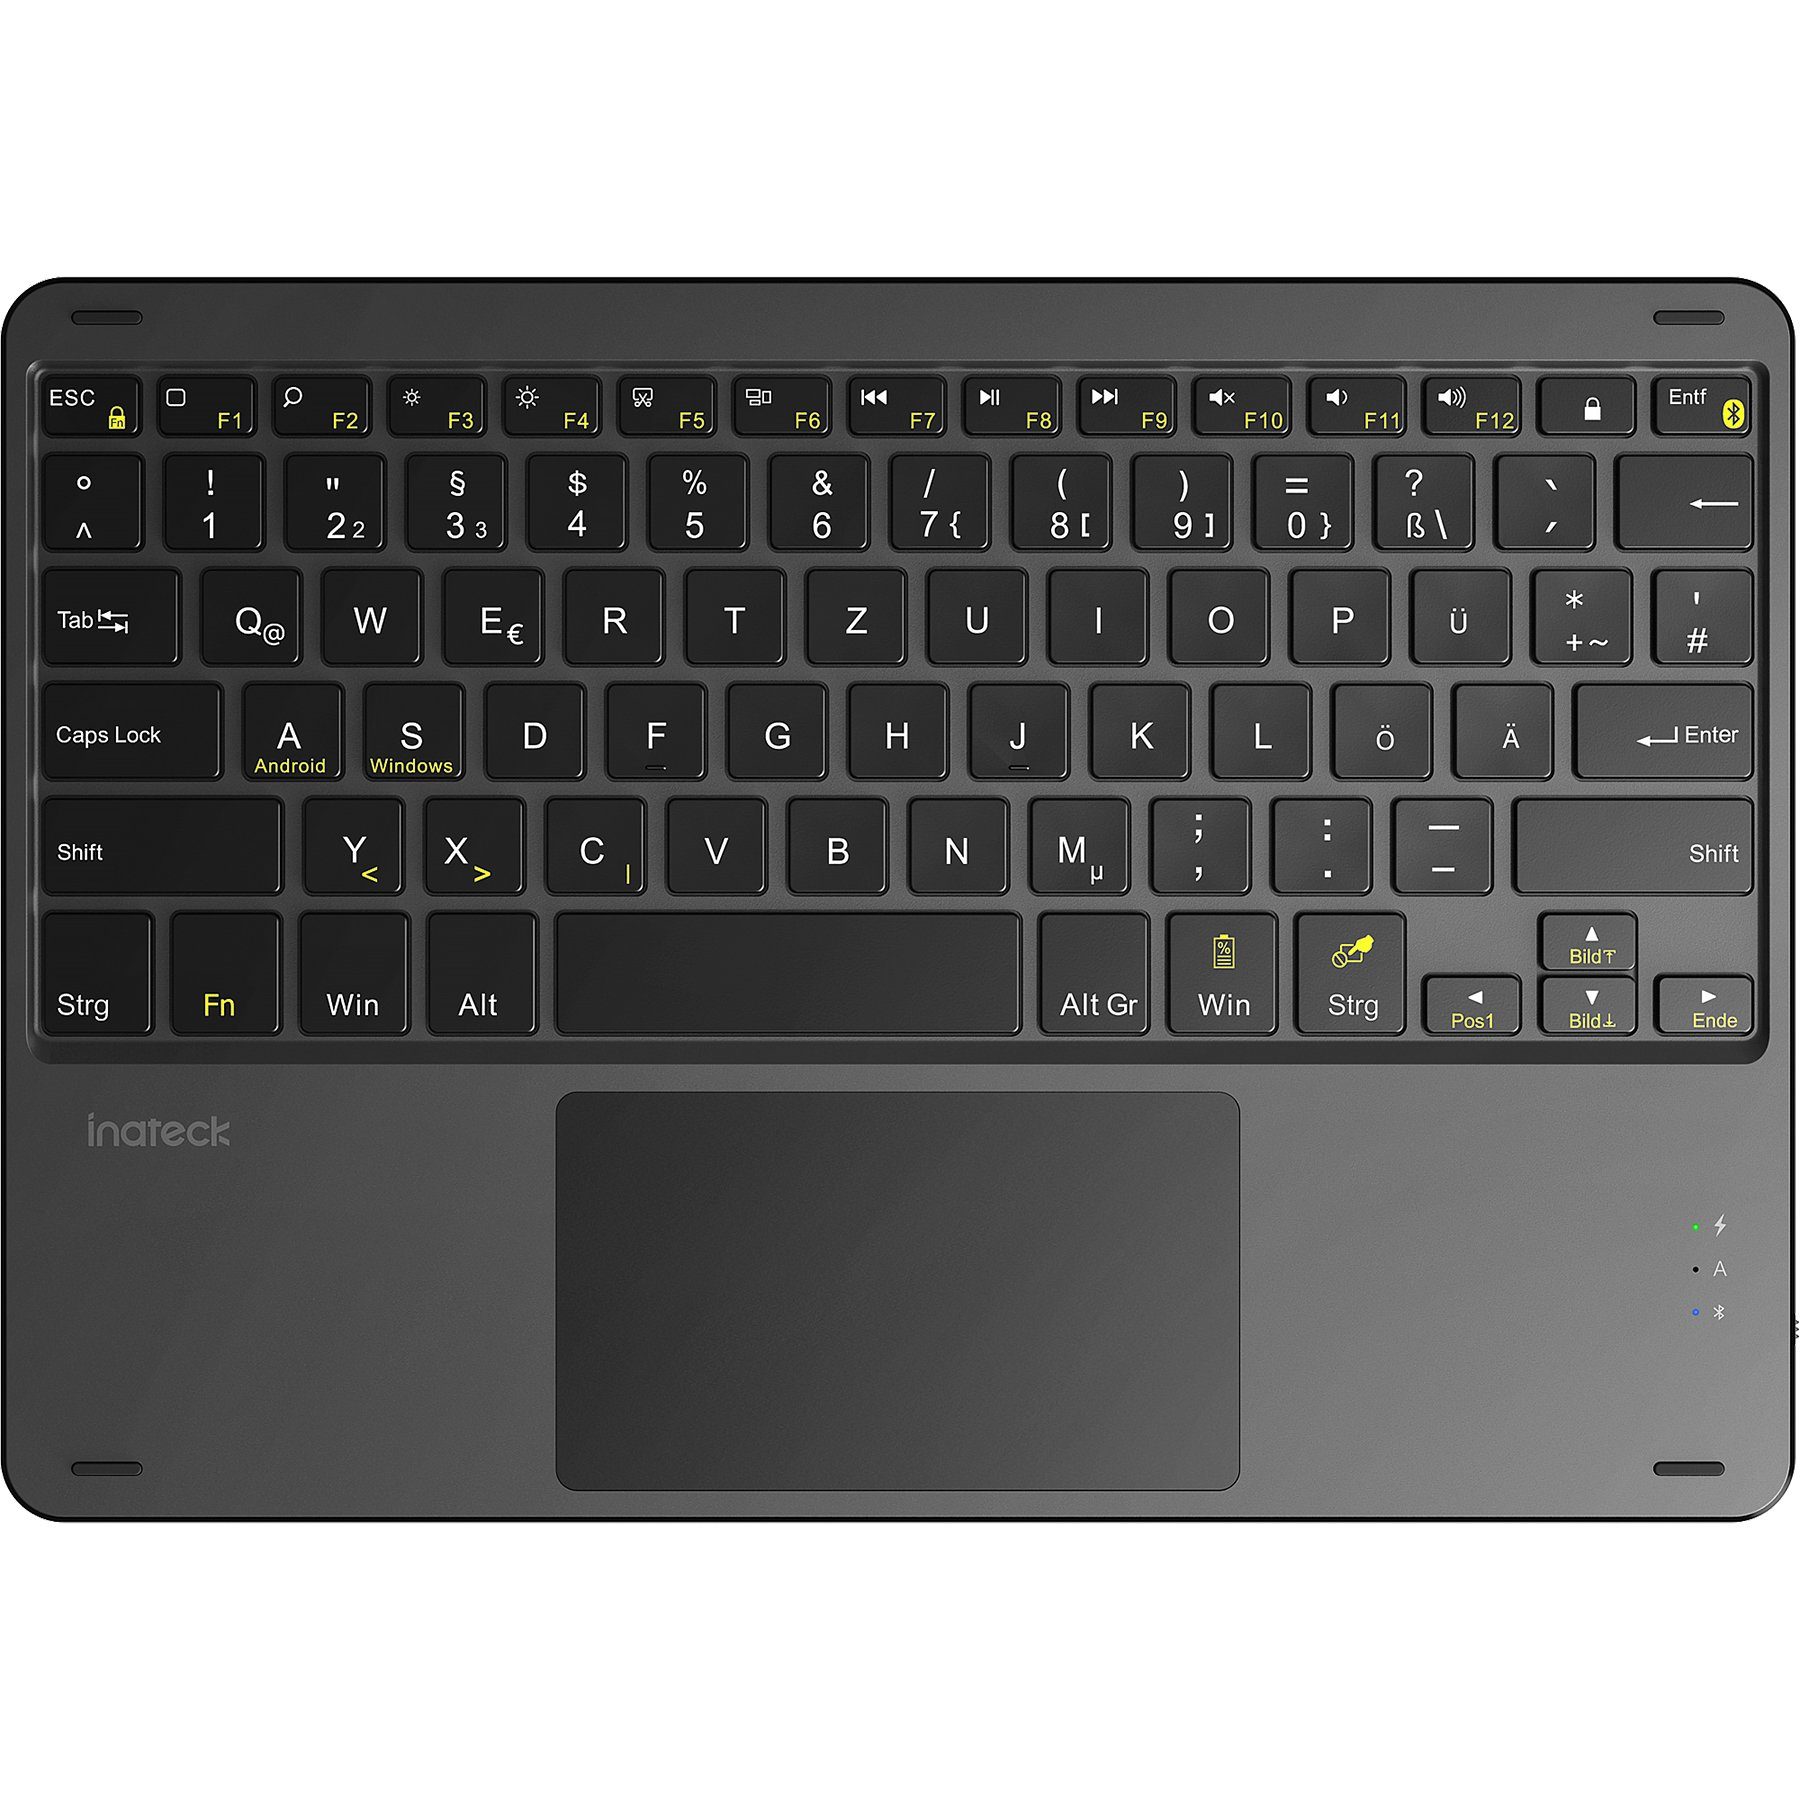 Inateck »Bluetooth Tastatur kompatibel mit Android Tablets/Smartphones und  Windows PCs, QWERTZ« Tastatur mit Touchpad online kaufen | OTTO